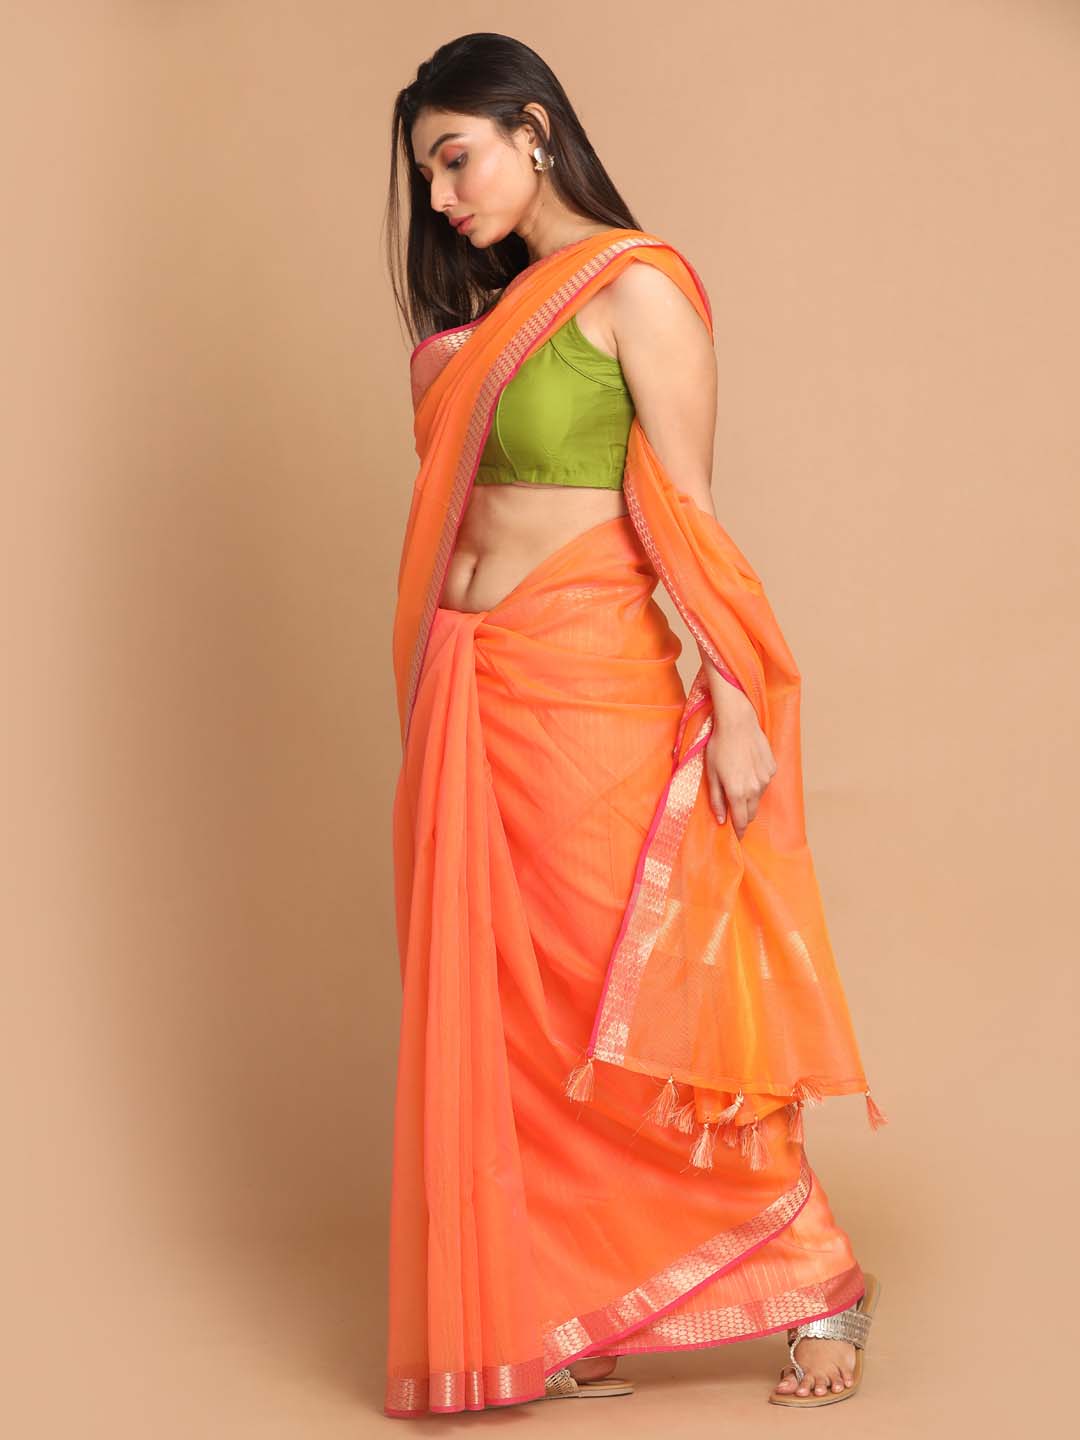 Indethnic Banarasi Orange Solid Daily Wear Saree - View 1